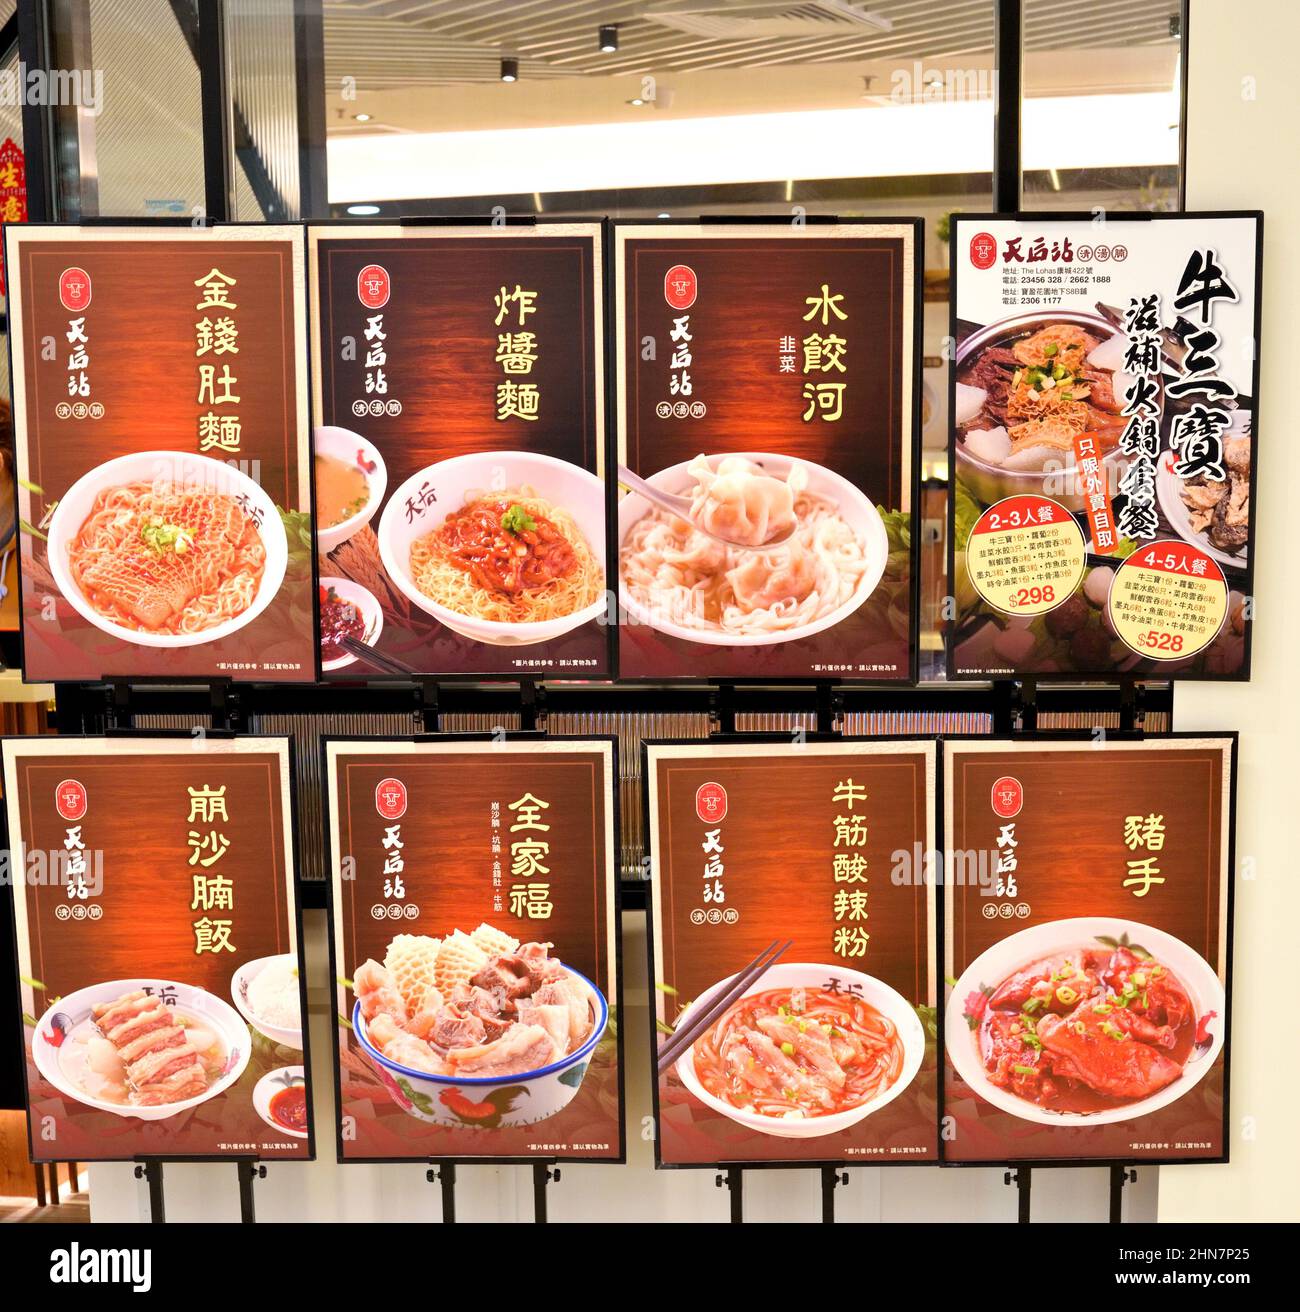 Affichage des tableaux alimentaires, Hong Kong Banque D'Images